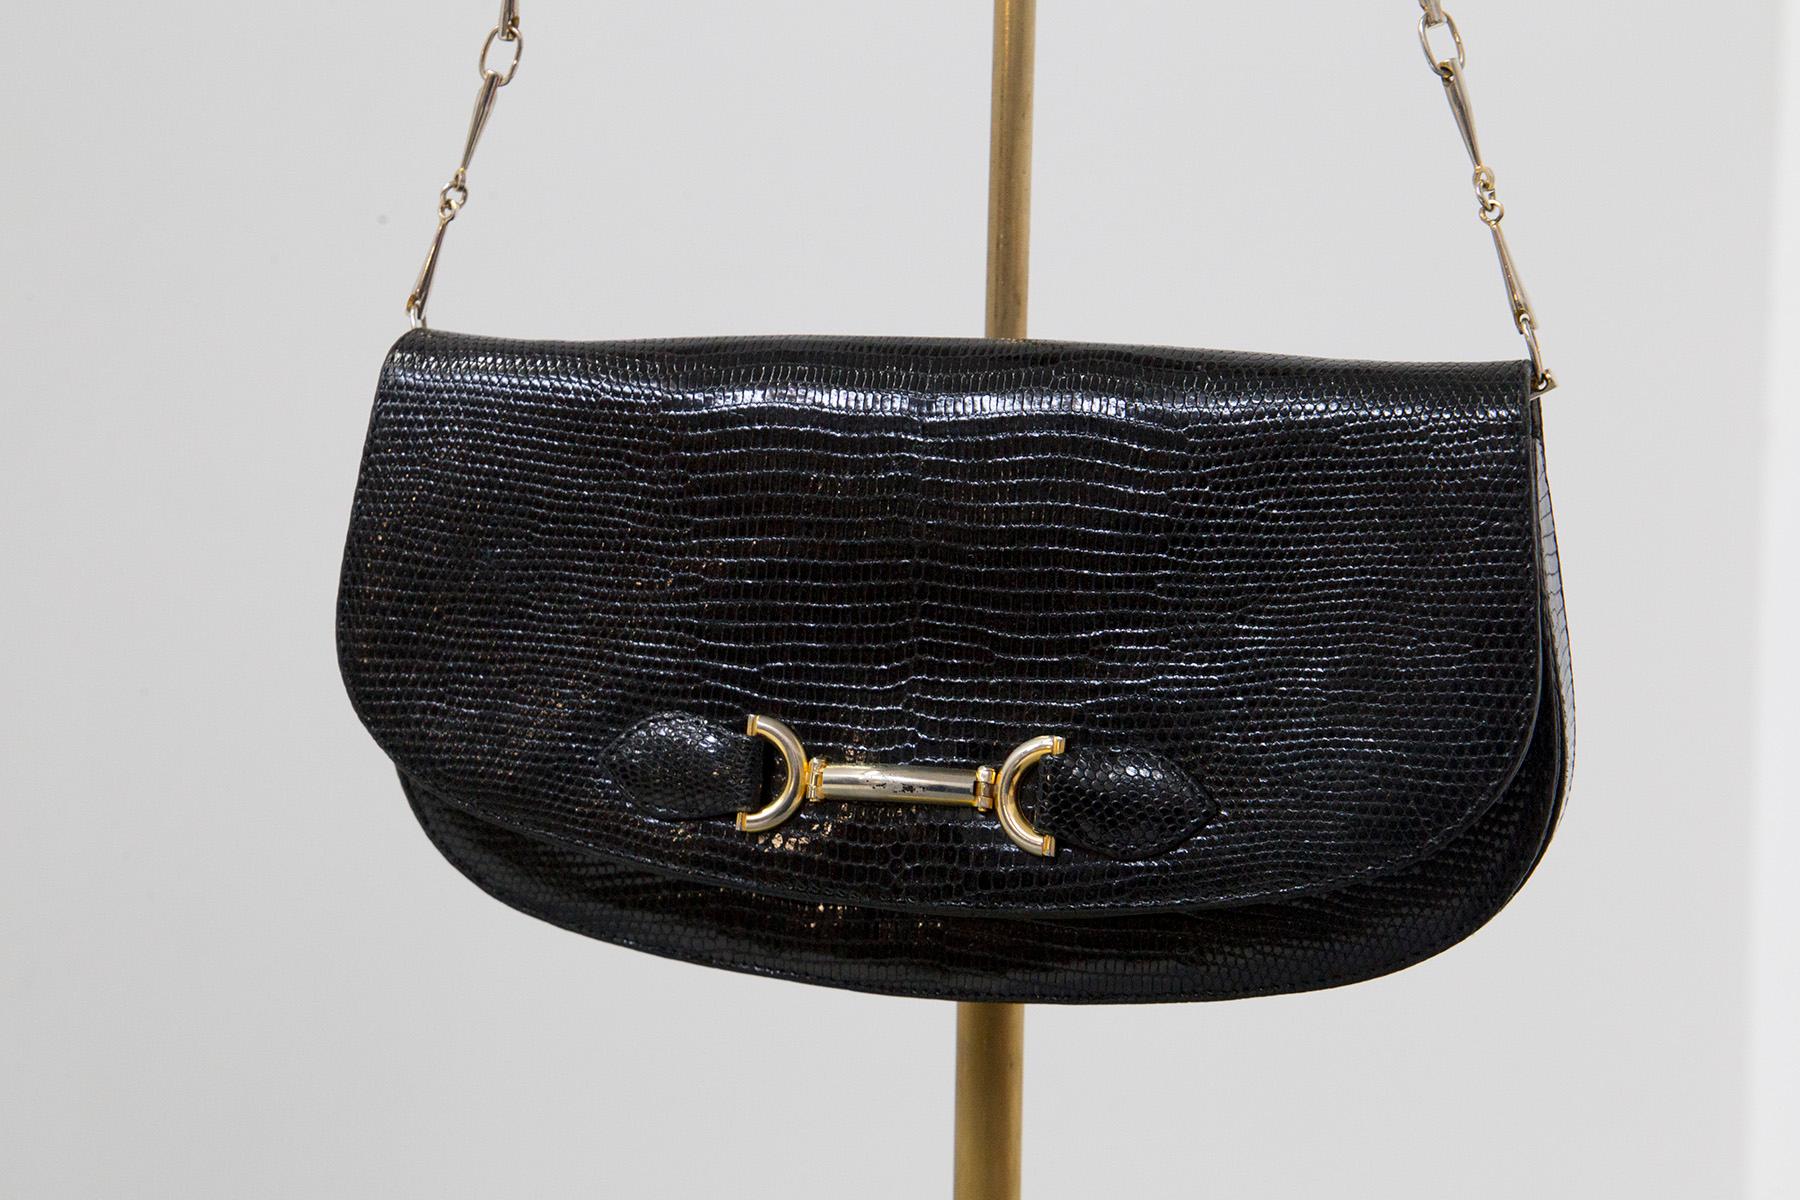 Schöne Vintage-Tasche aus den 1960er Jahren aus schwarzem Leder, feine italienische Herstellung.
Die Tasche ist eine kleine Schulter- oder Armtasche. Es hat eine schöne goldene Metallkette, die es tragbar macht, wie Sie wollen.
Der Korpus der Tasche